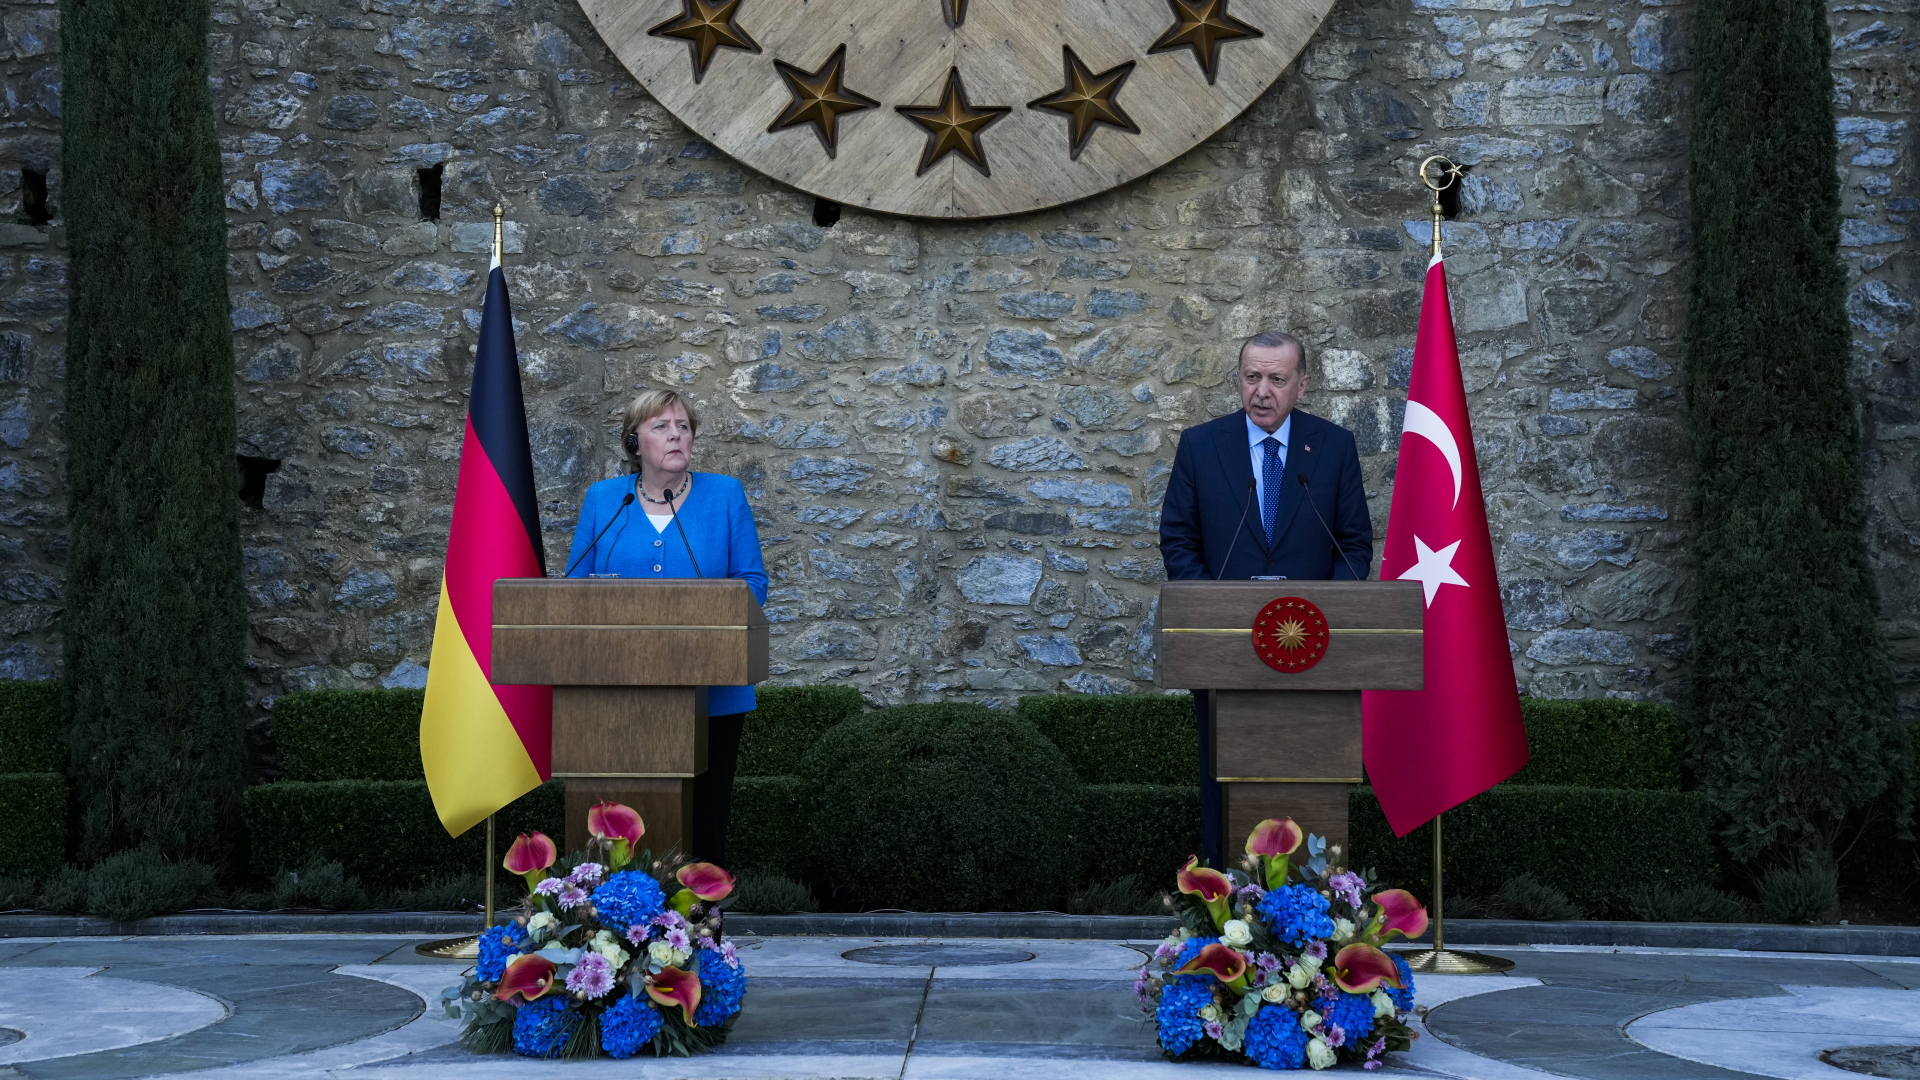 Recep Tayyip Erdogan, Staatspräsident der Türkei, spricht neben Bundeskanzlerin Angela Merkel während einer gemeinsamen Pressekonferenz nach ihrem Treffen in Istanbul. | dpa